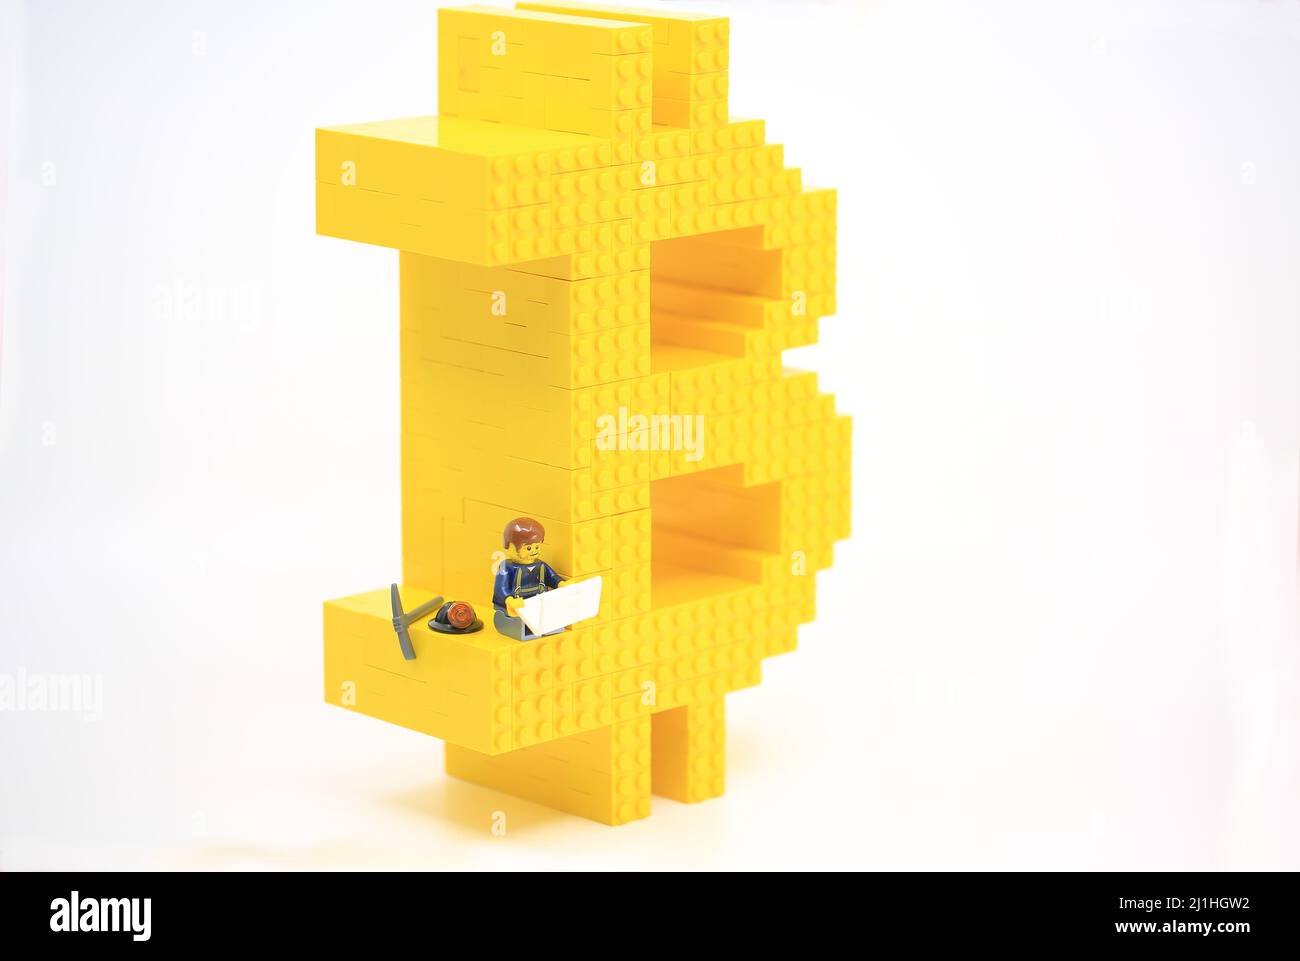 Lego crypto stock photography images - Alamy